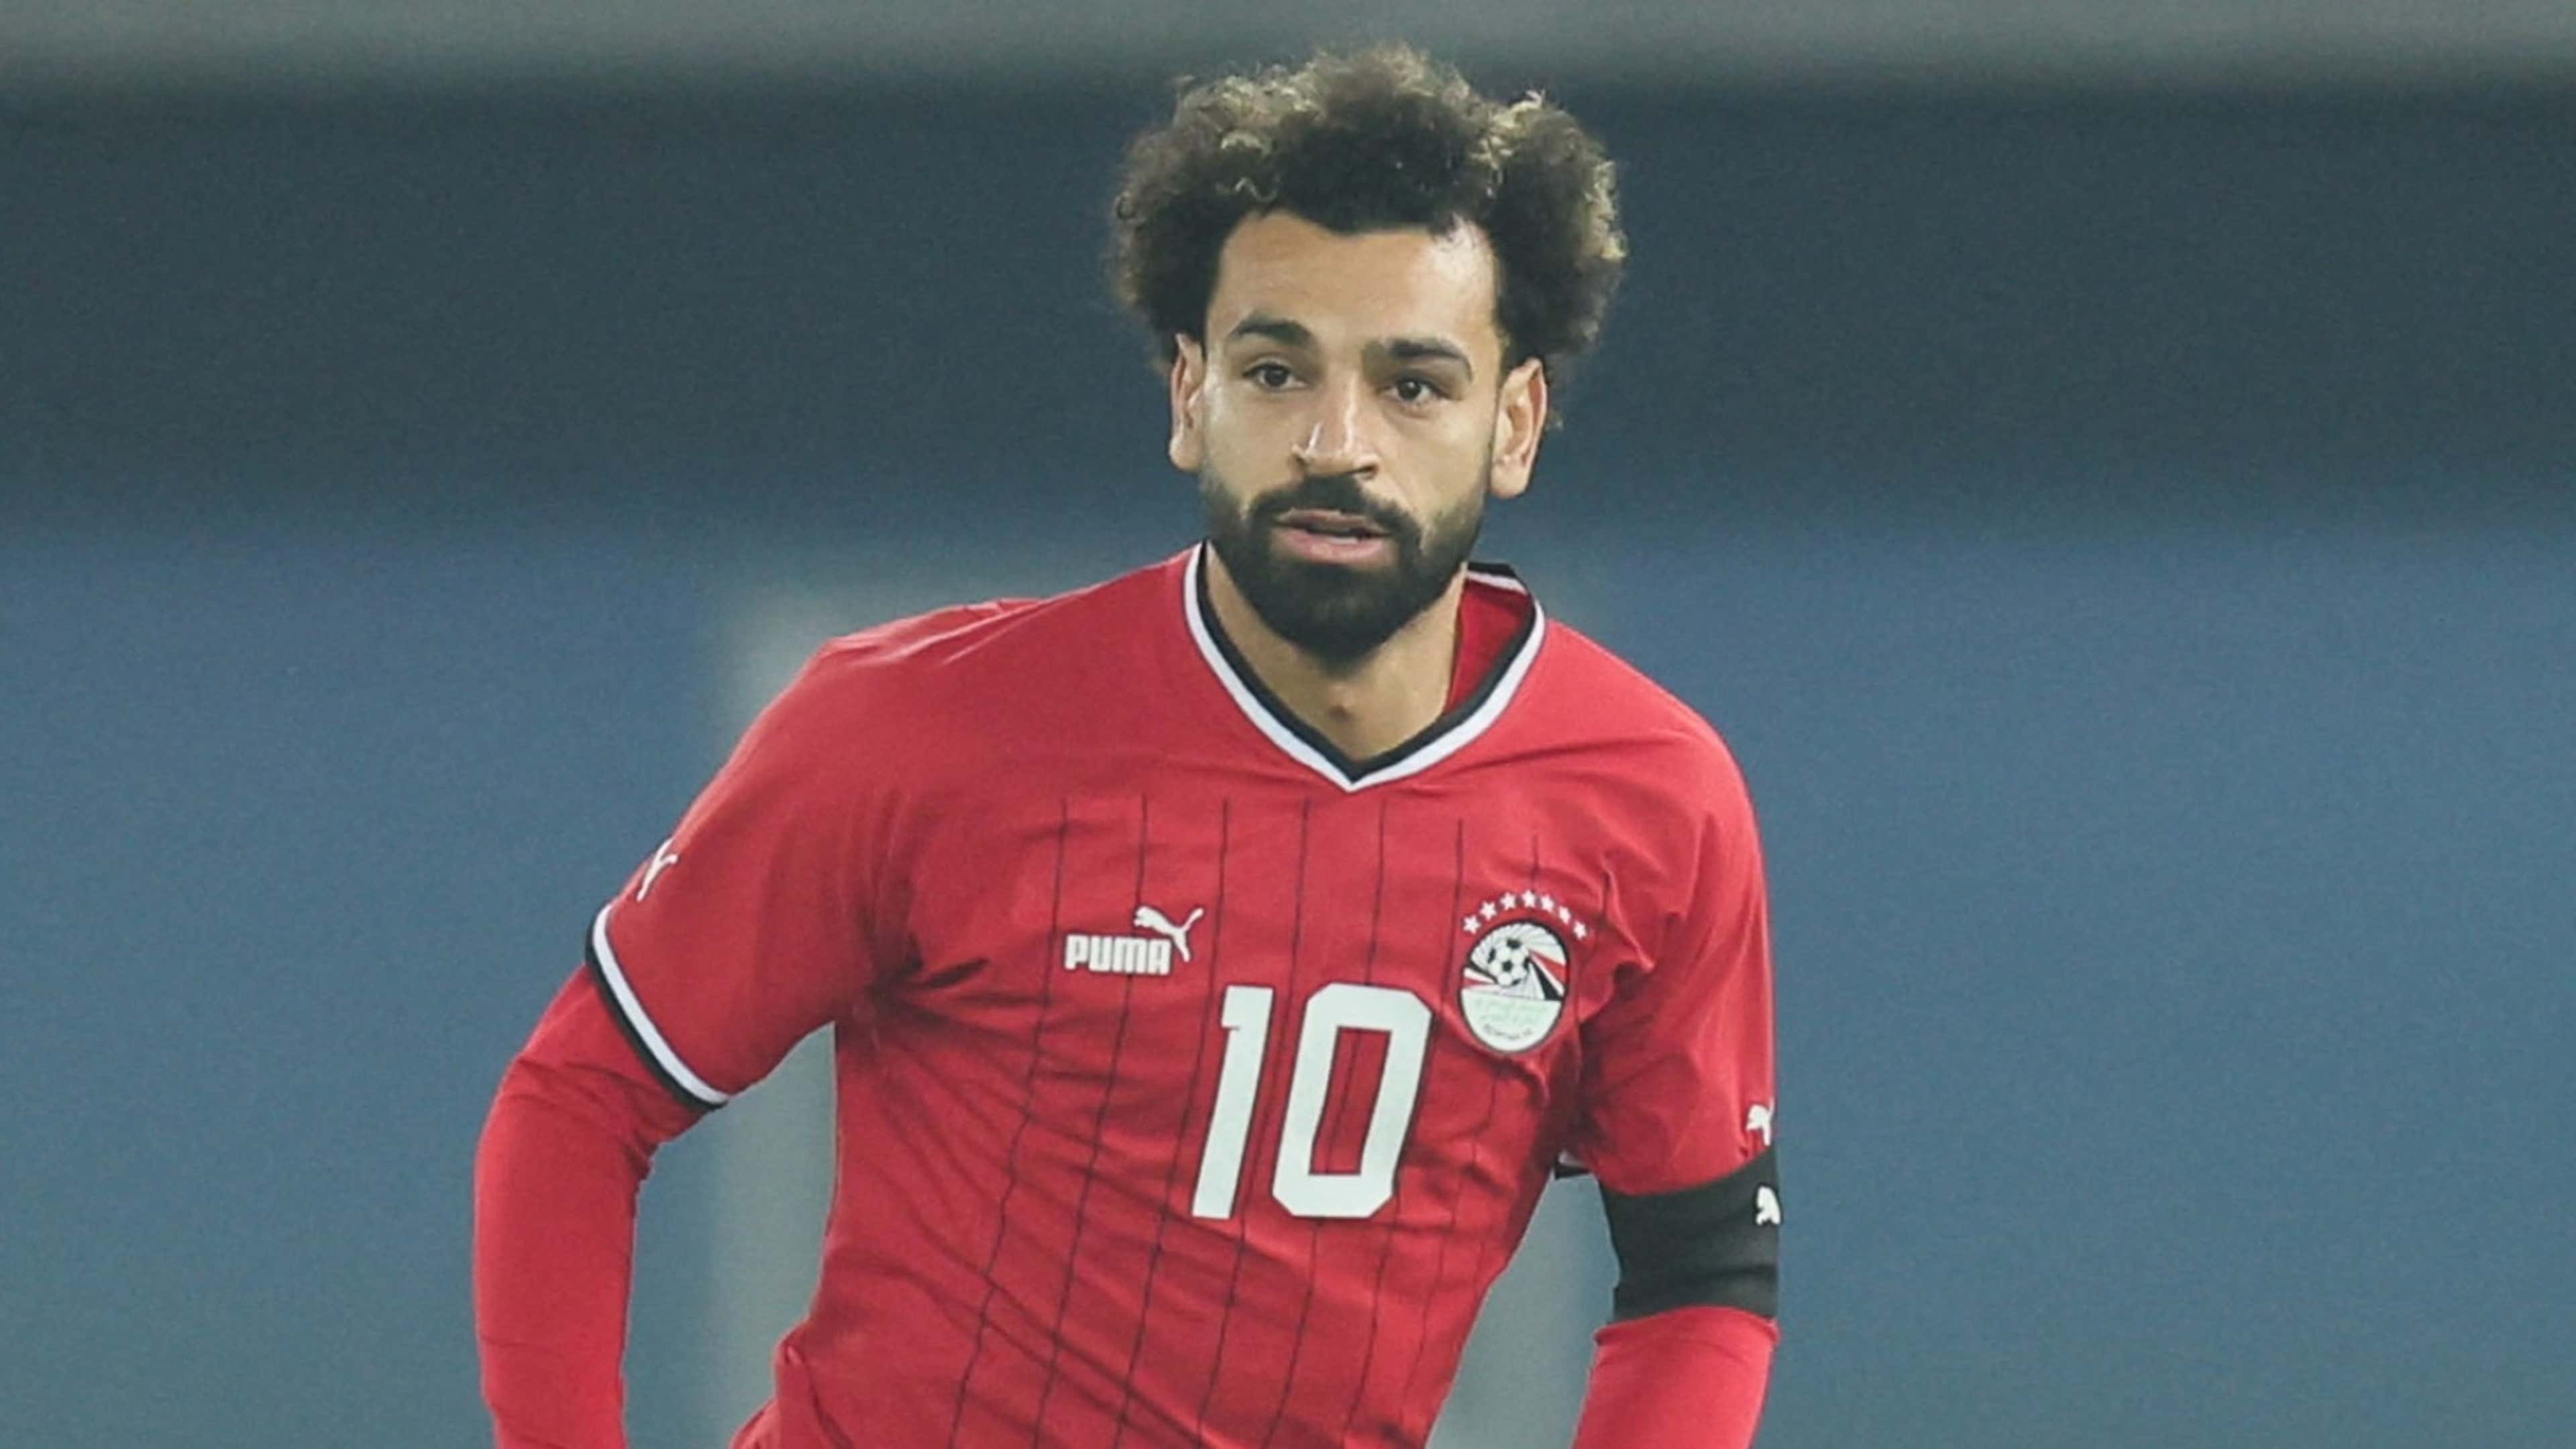 Mohamed Salah, Egypt